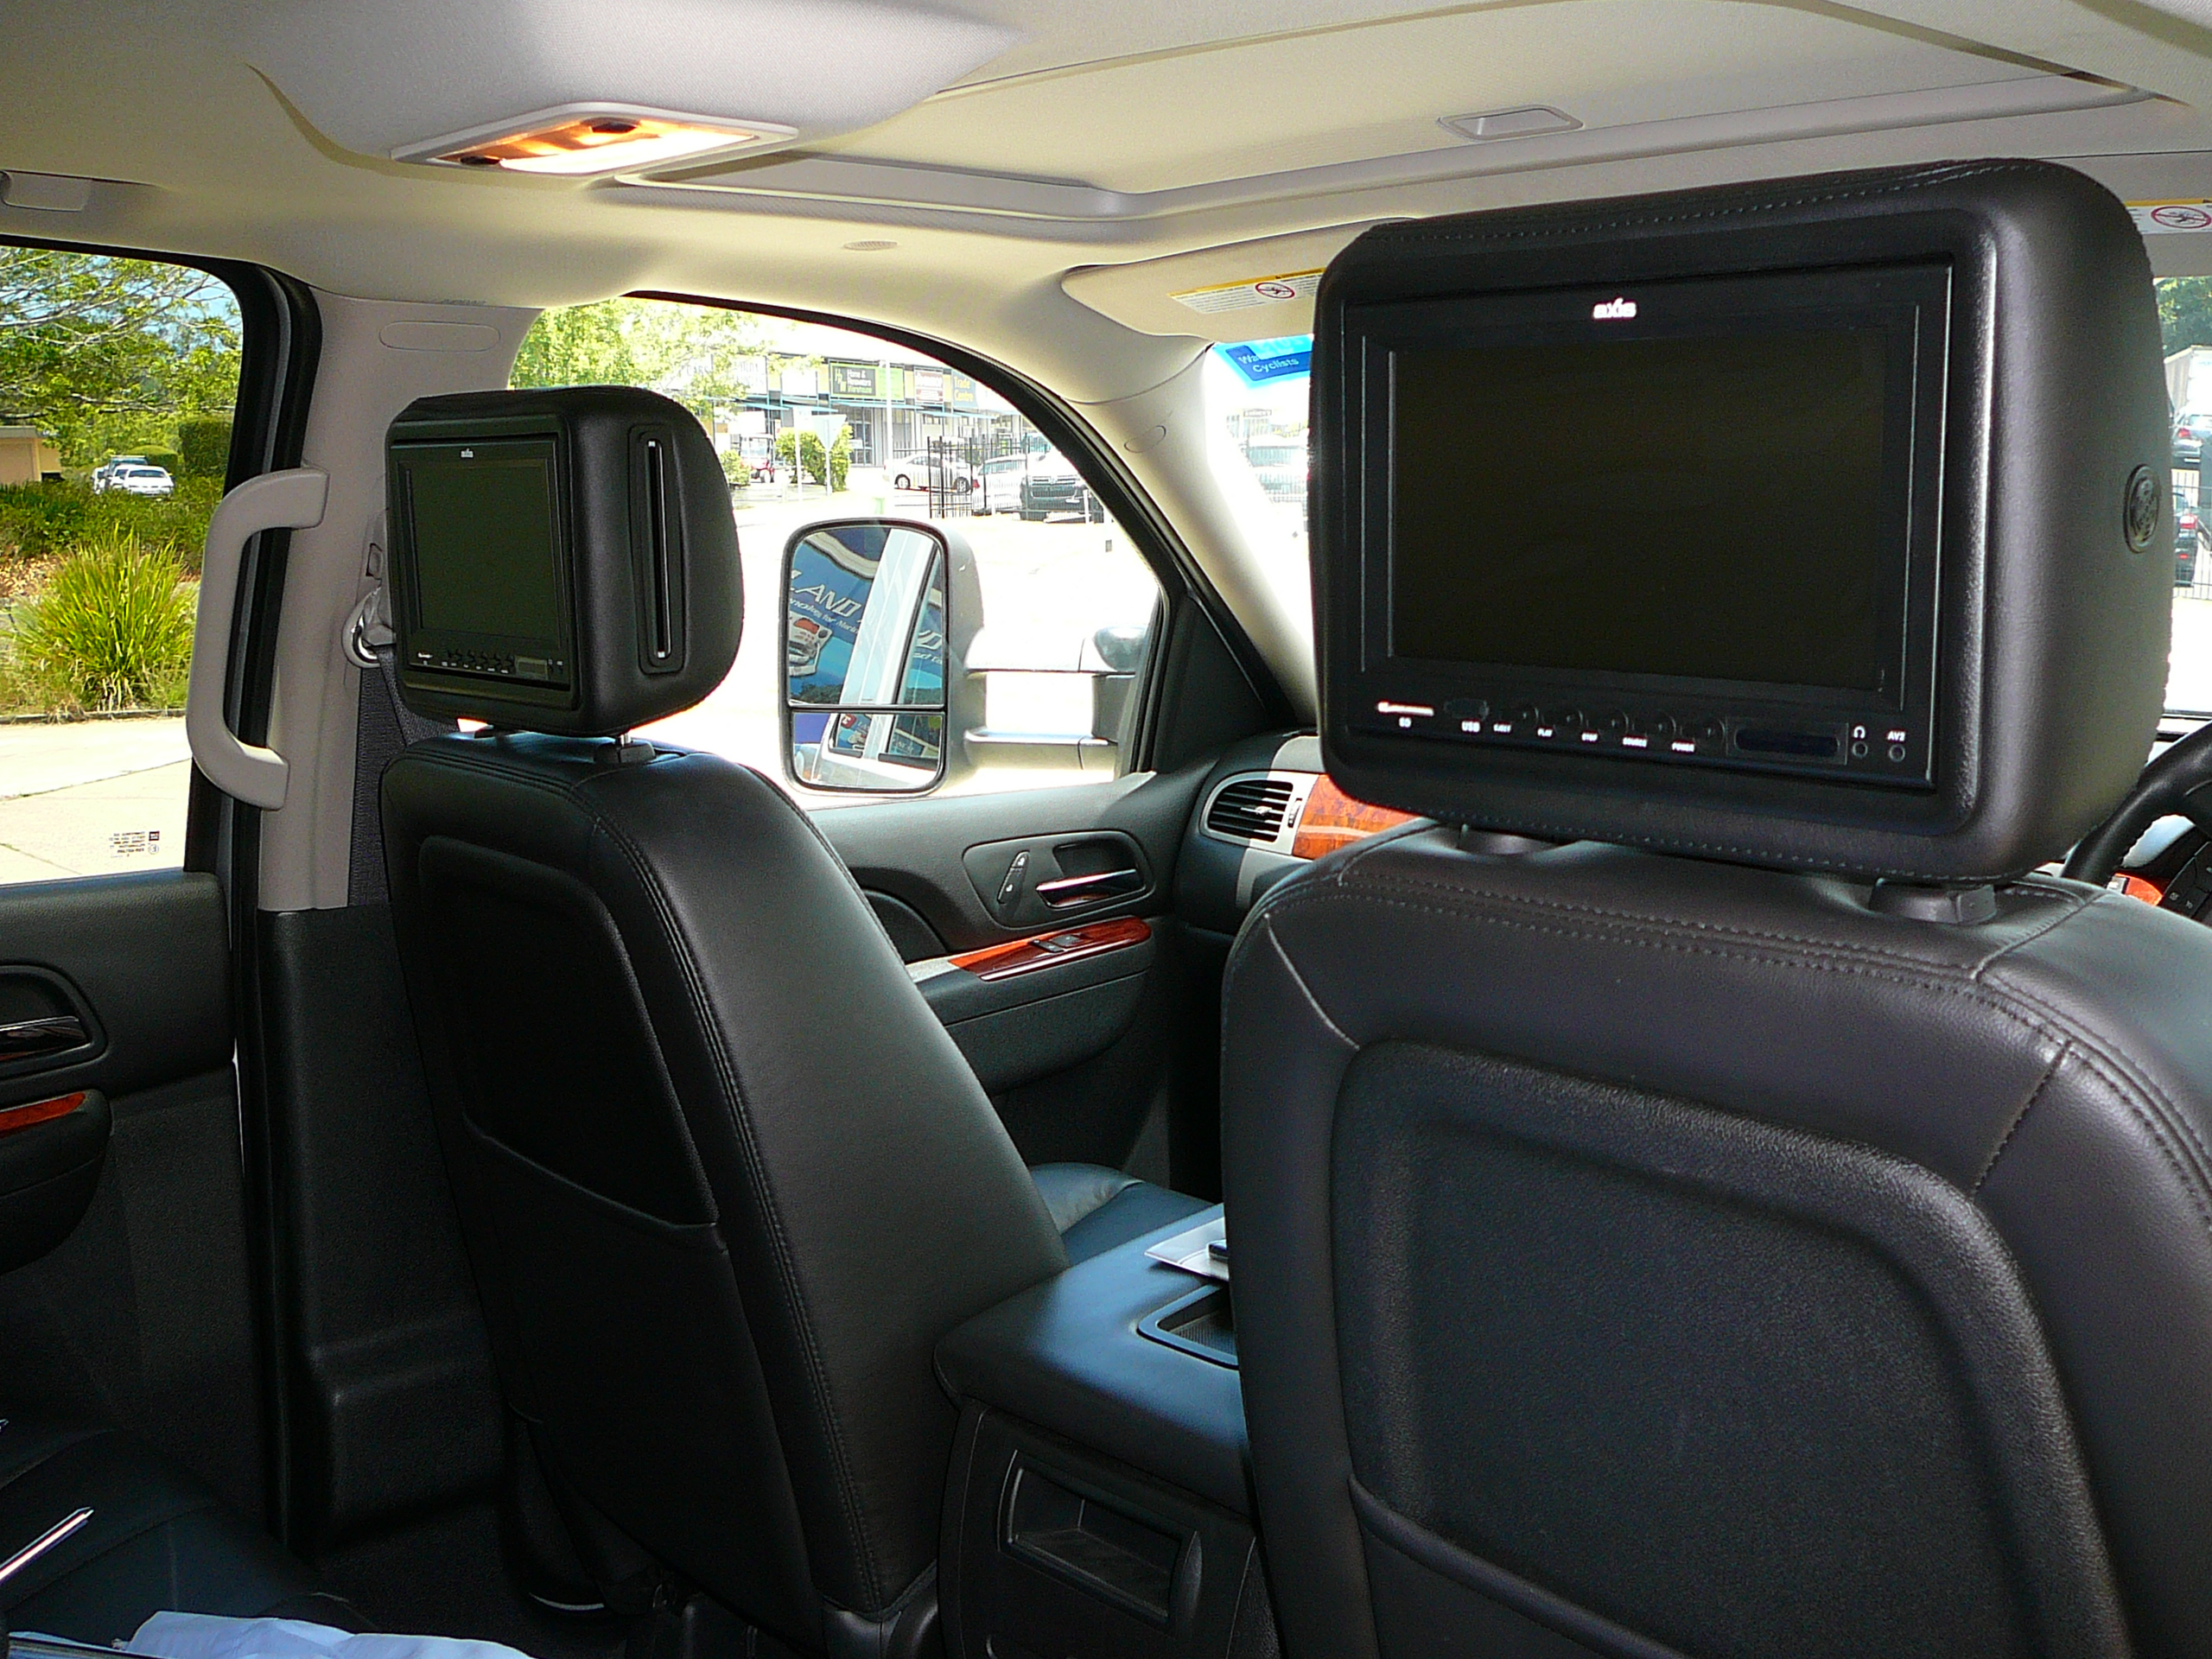 Chevrolet Silverado Axis DVD Rear Seat Entertainment